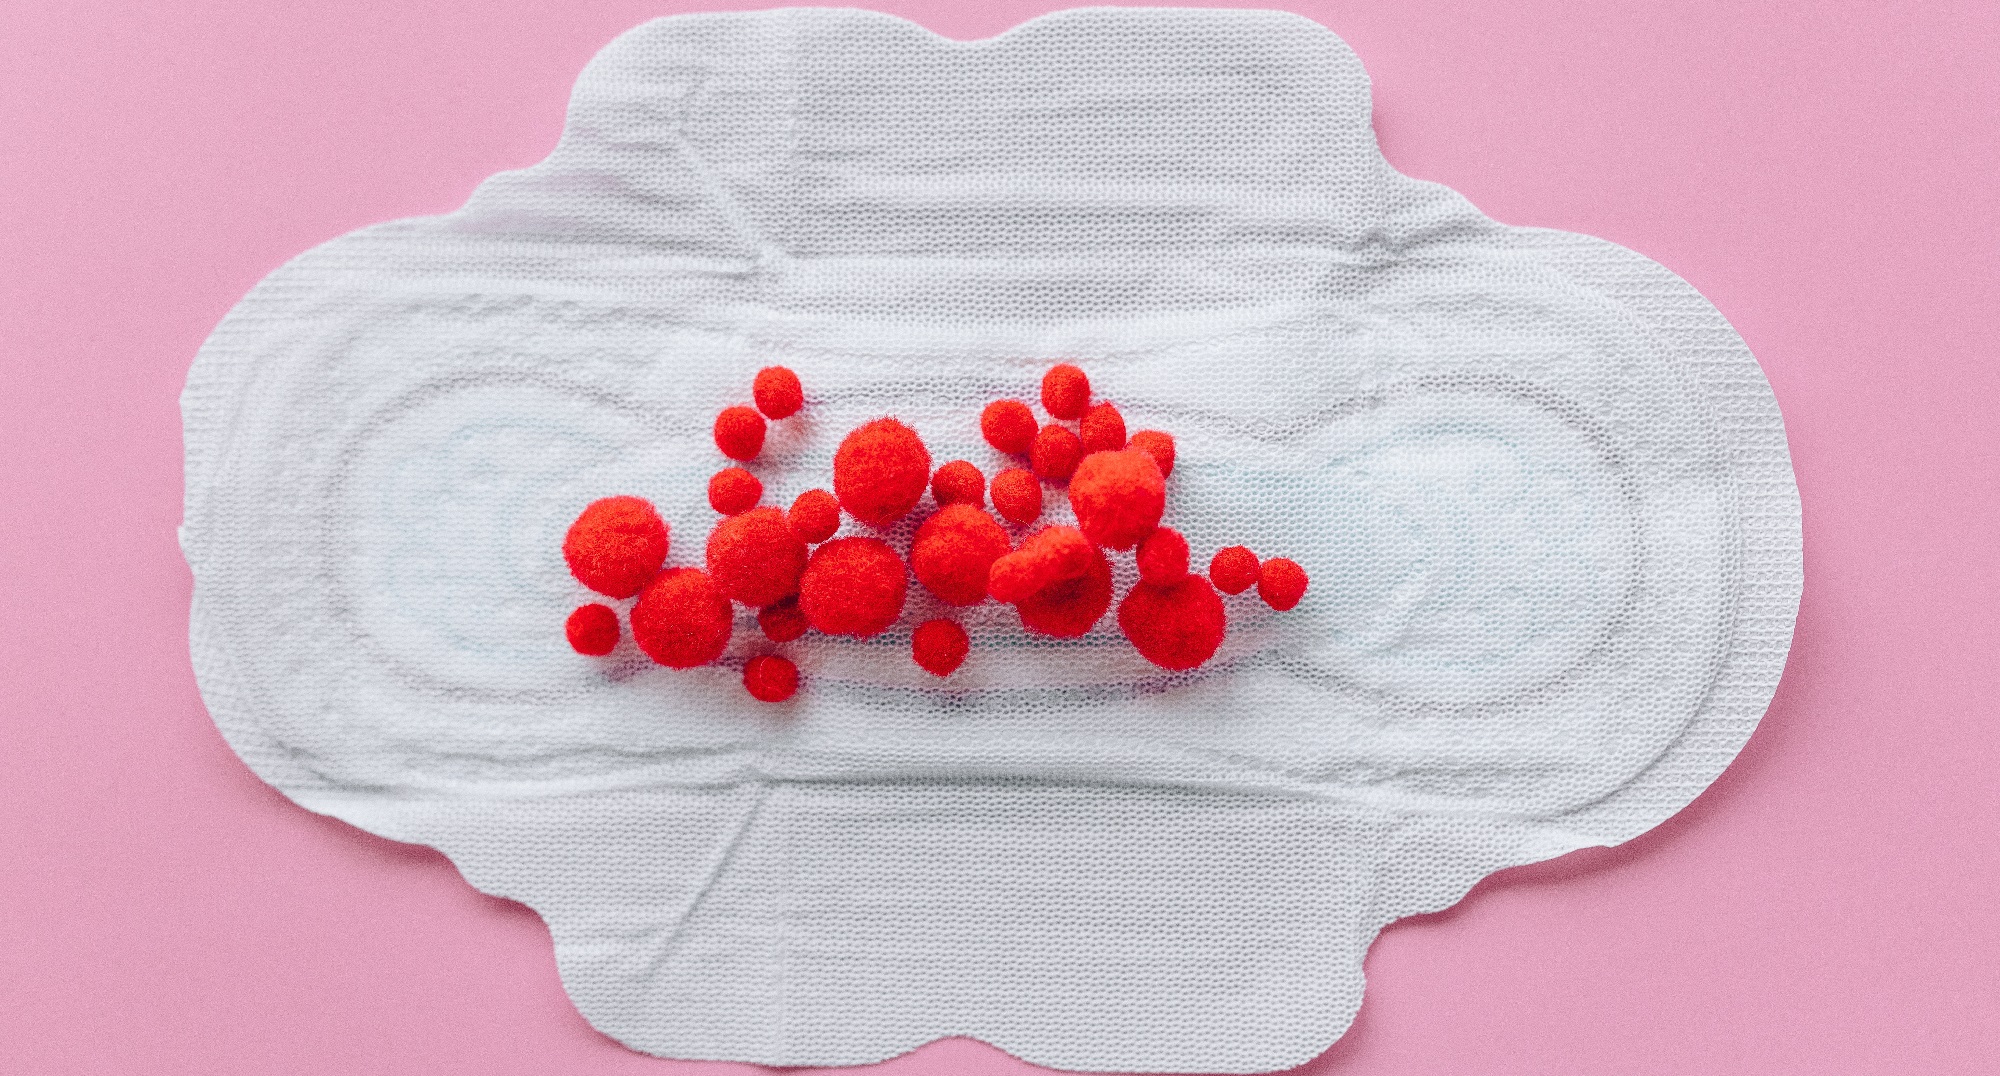 Escocia se convierte en el primer país del mundo en ofrecer productos menstruales gratis a mujeres